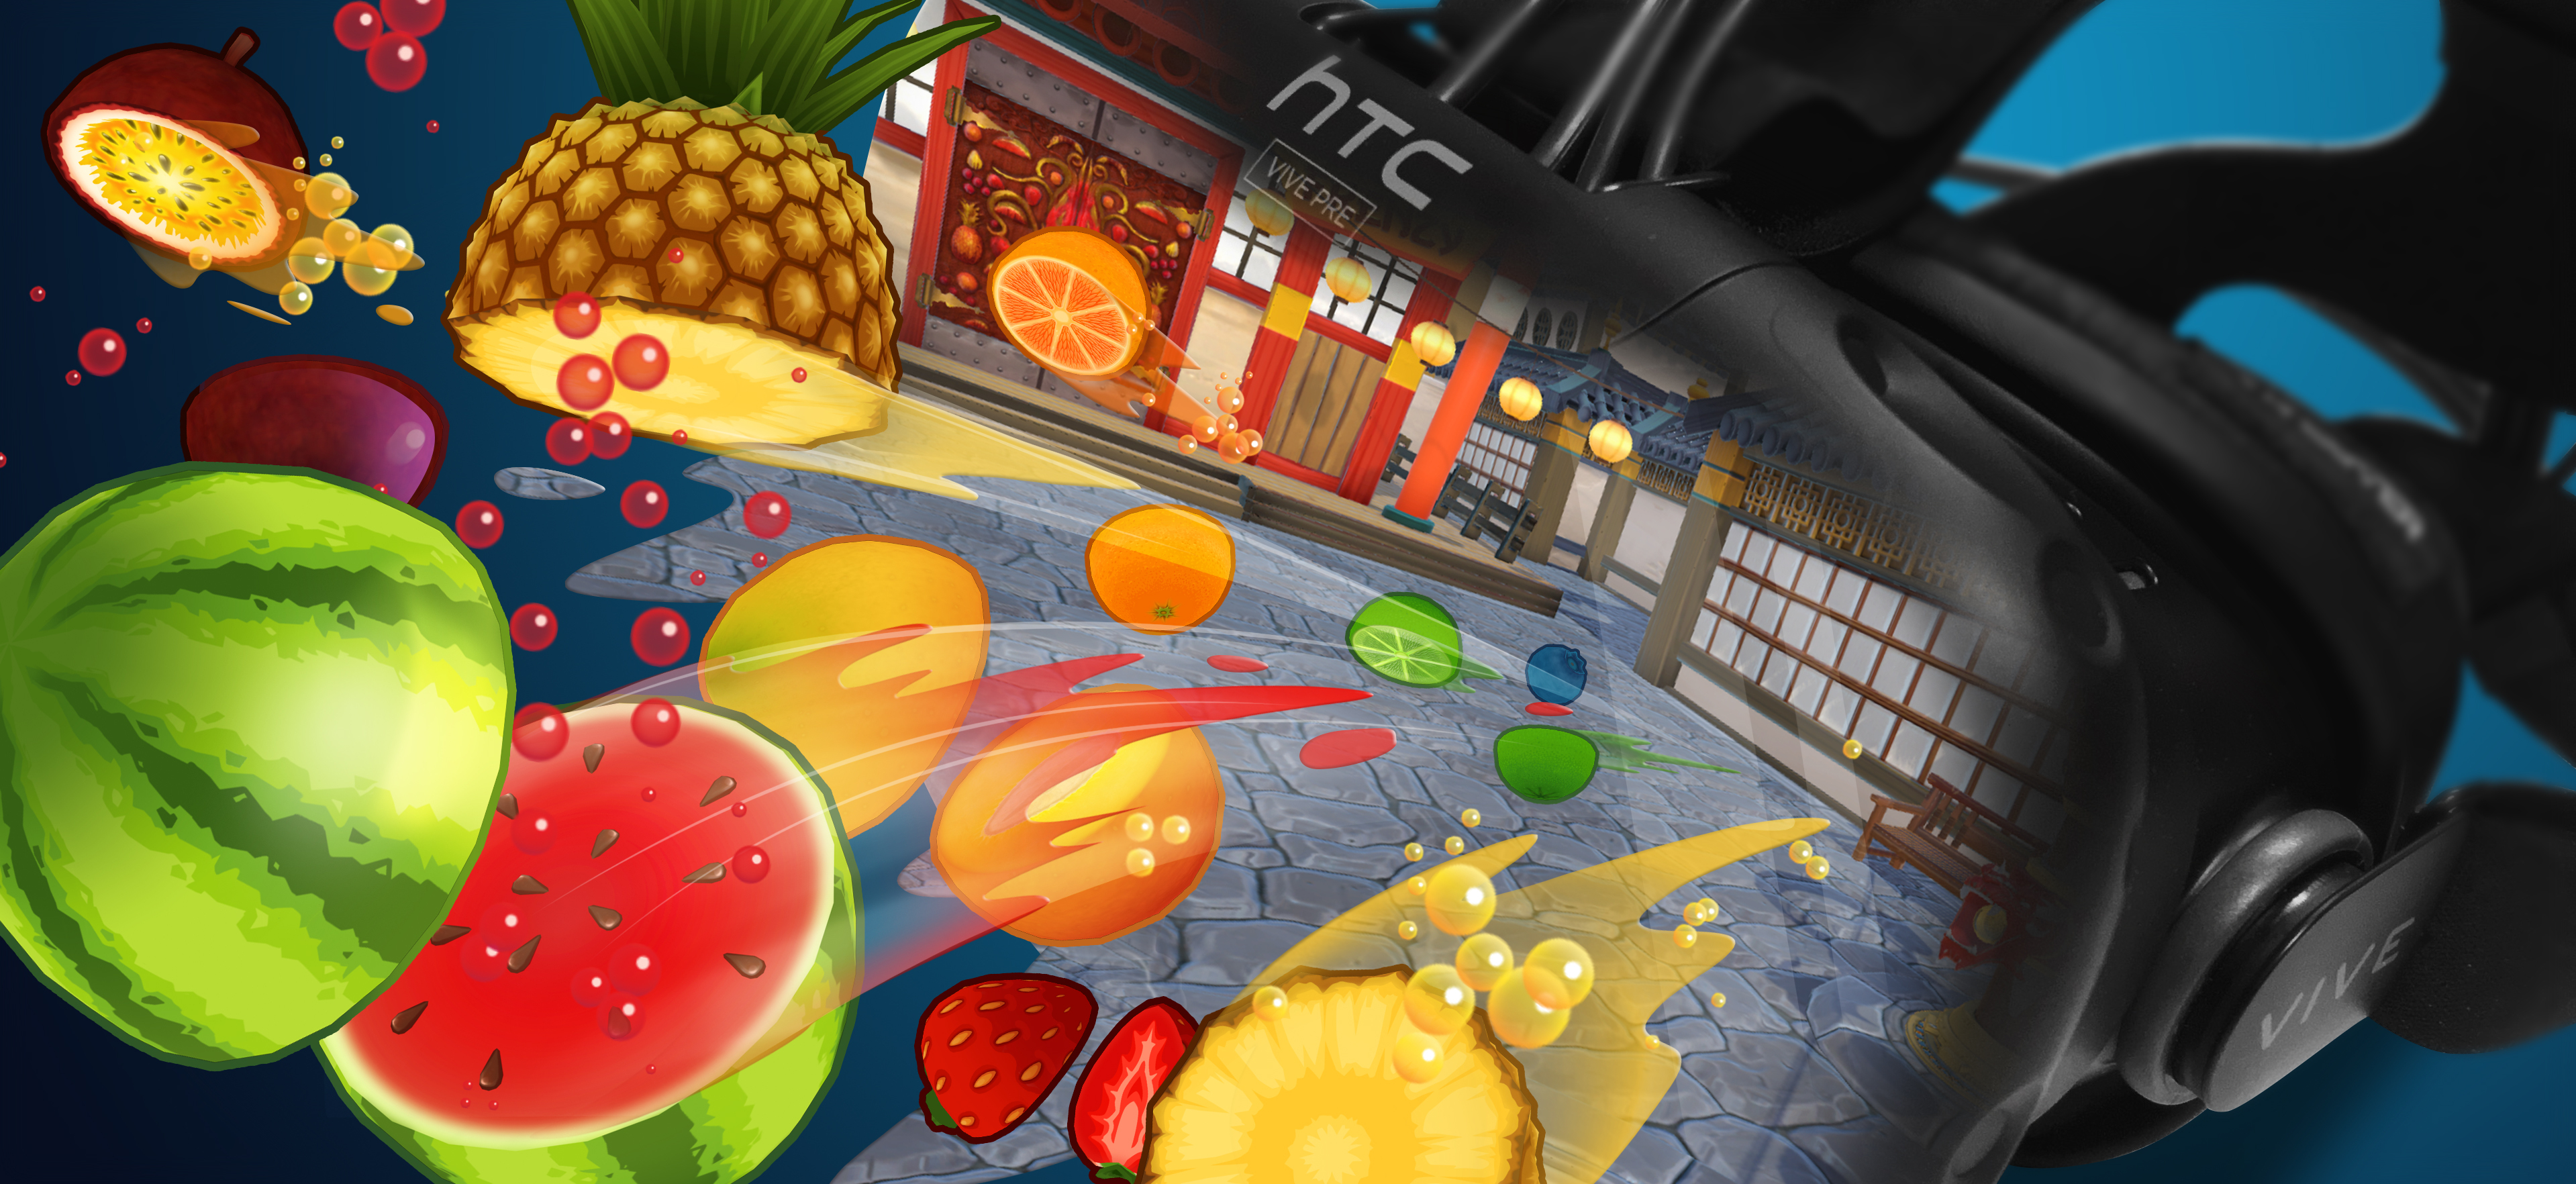 Fruit Ninja VR on Steam